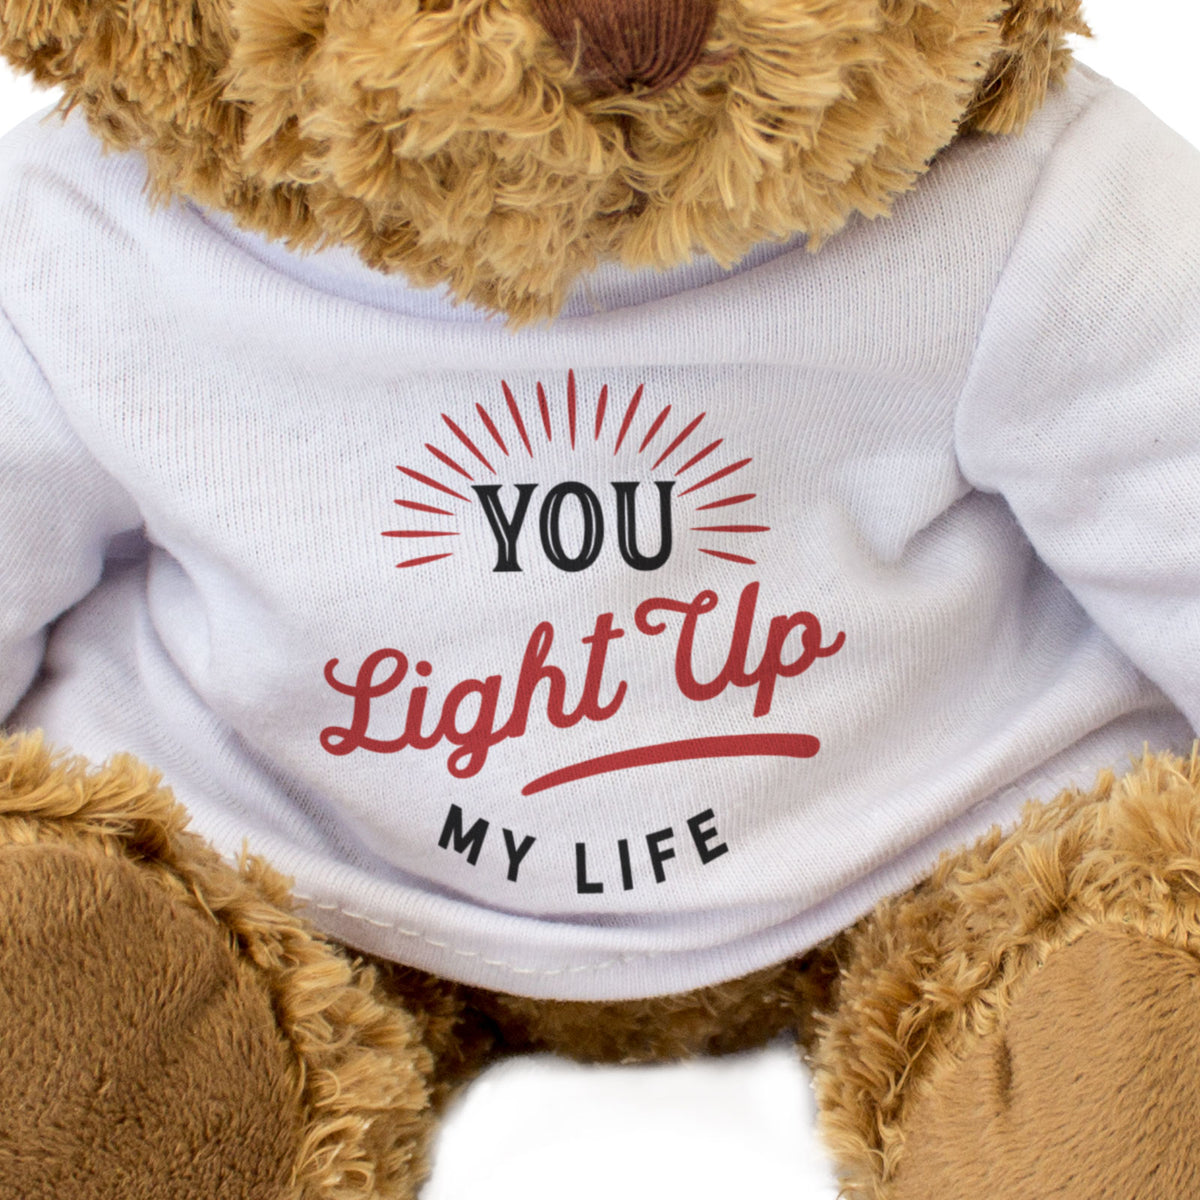 You Light Up My Life - Teddy Bear